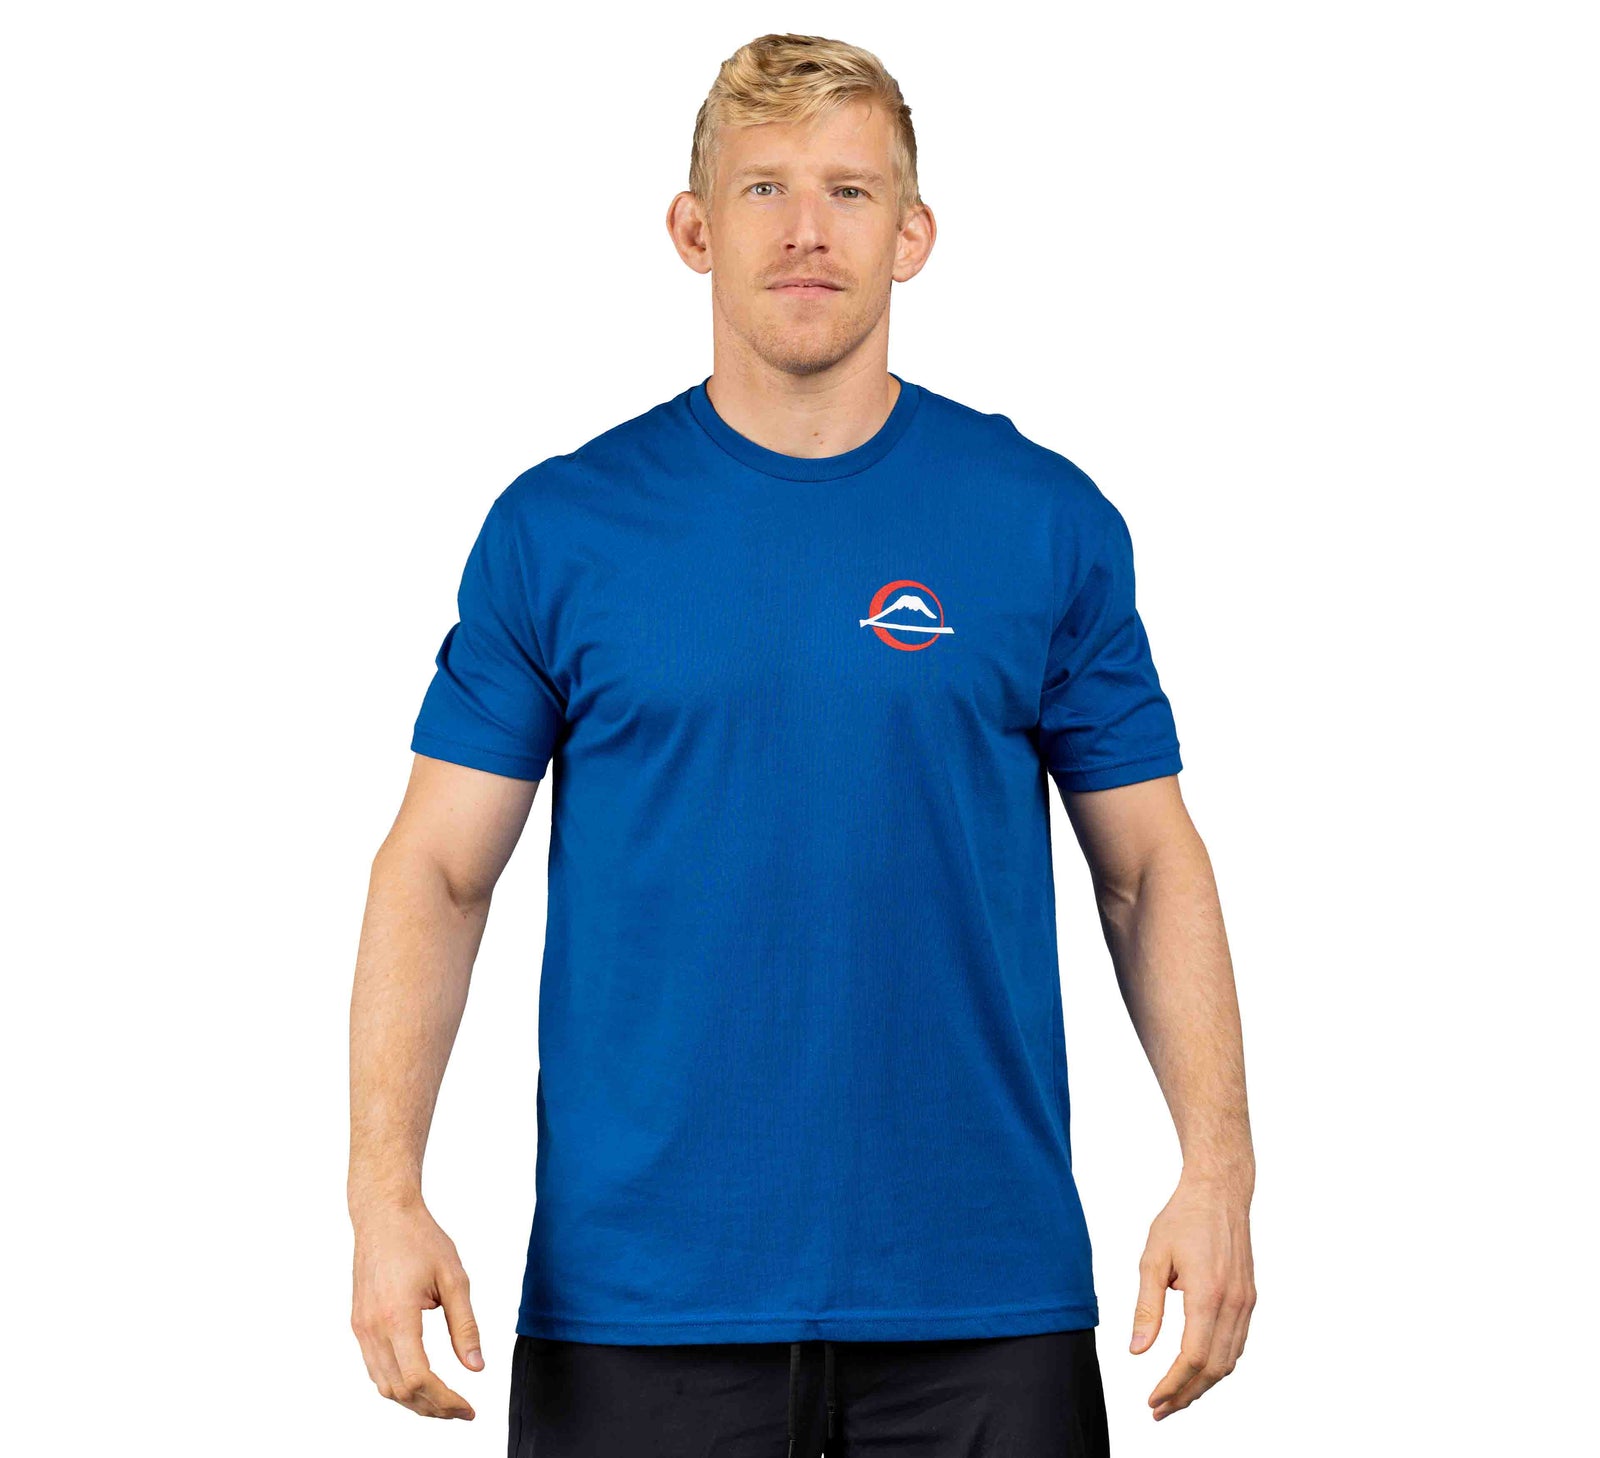 Martial Artist Shirt Blue